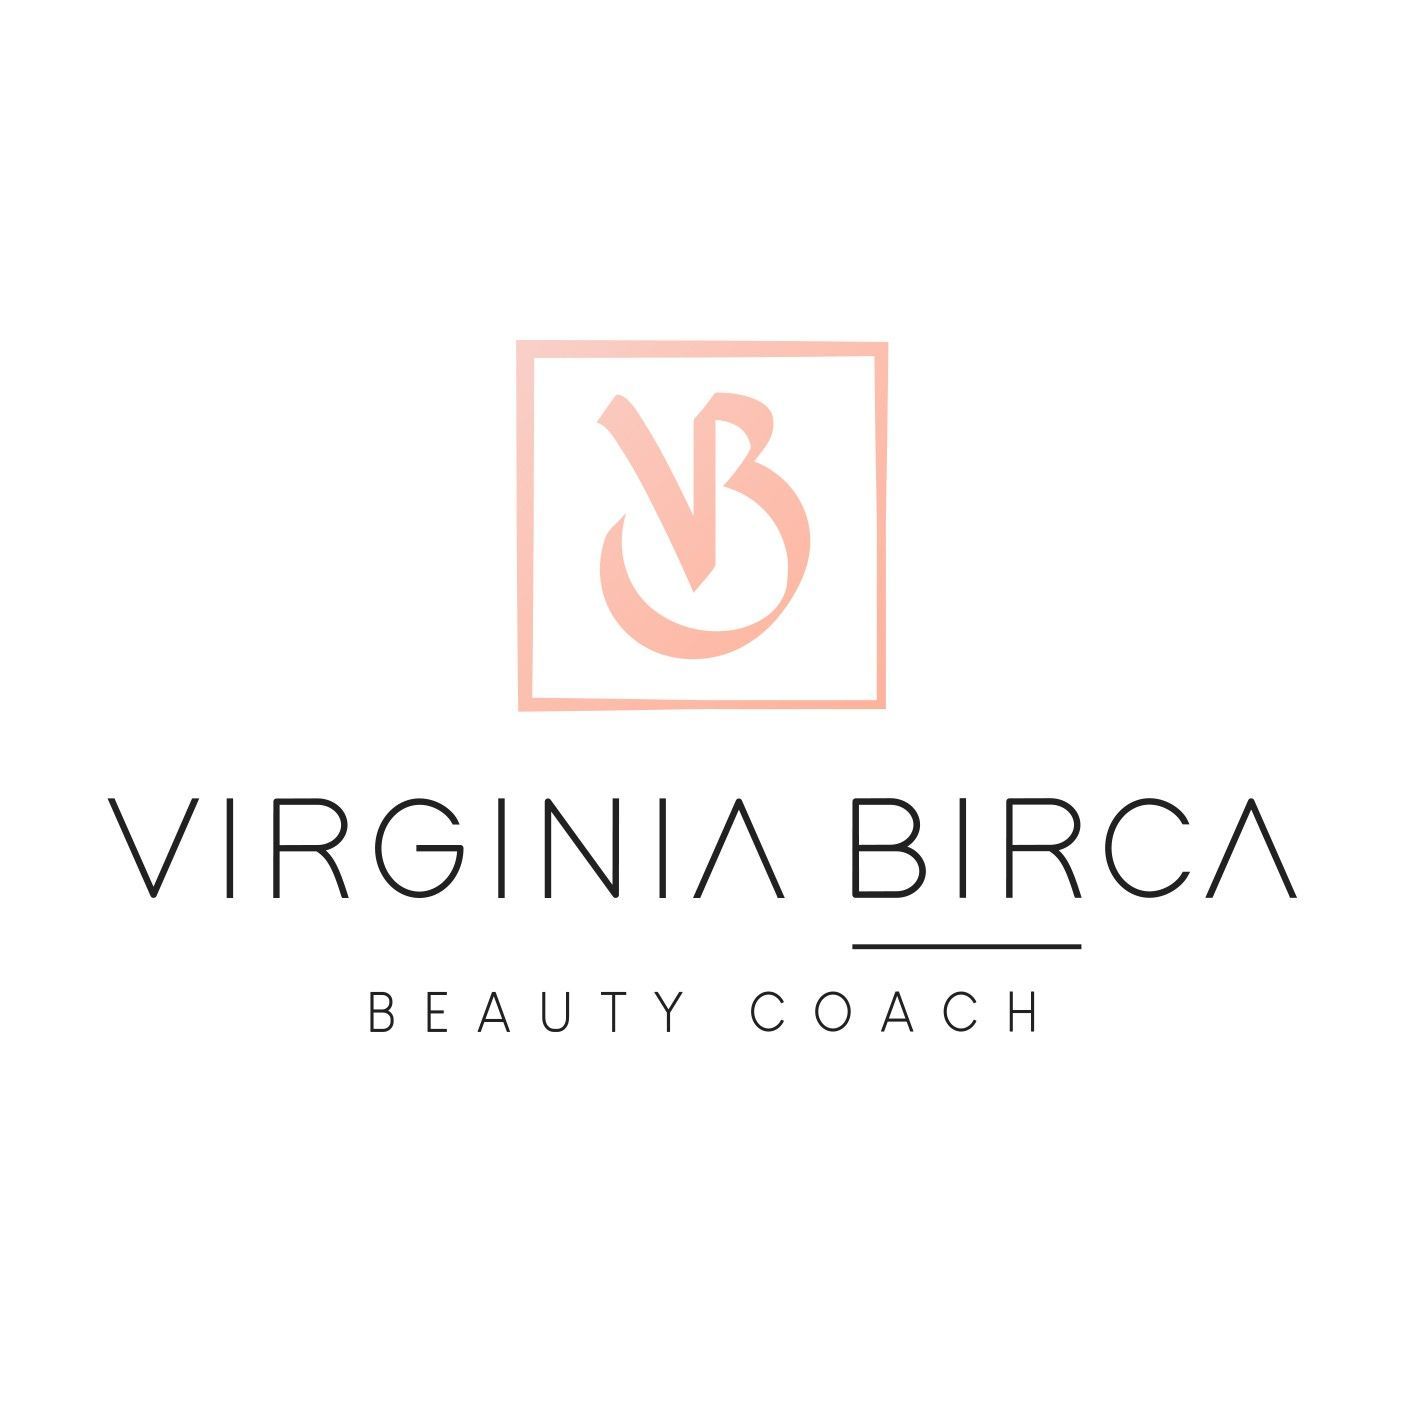 Virginia Birca Beauty Coach, Paseo Santa María De La Cabeza 39, Clínica Fisiojes, 28045, Madrid